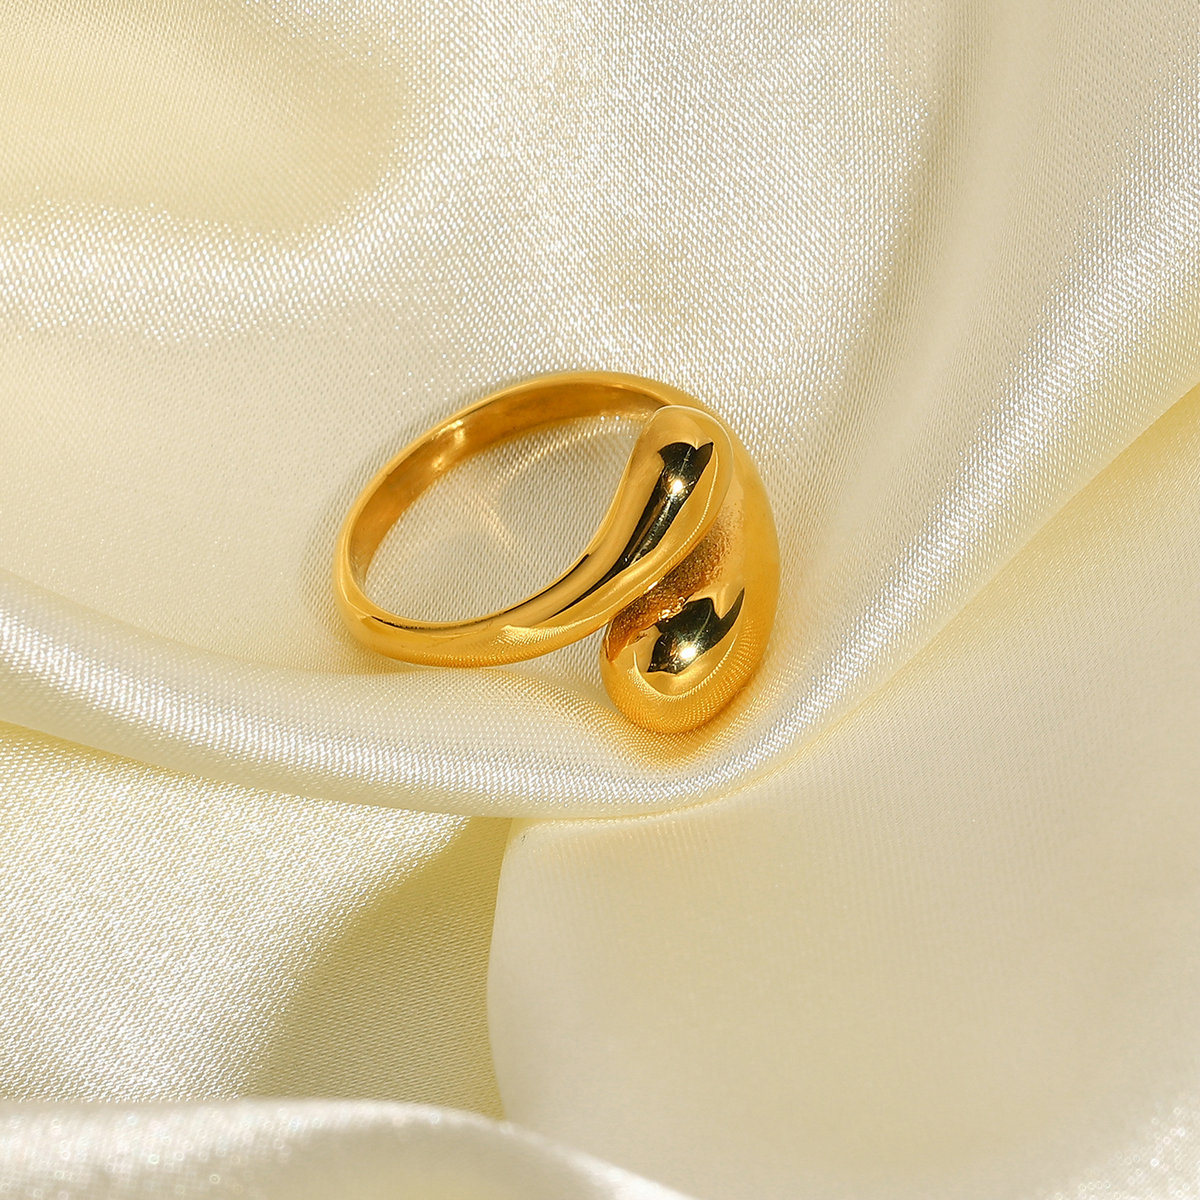 新款时尚镀金不锈钢矮胖戒指女士创意可调式交叉开口戒指珠宝首饰